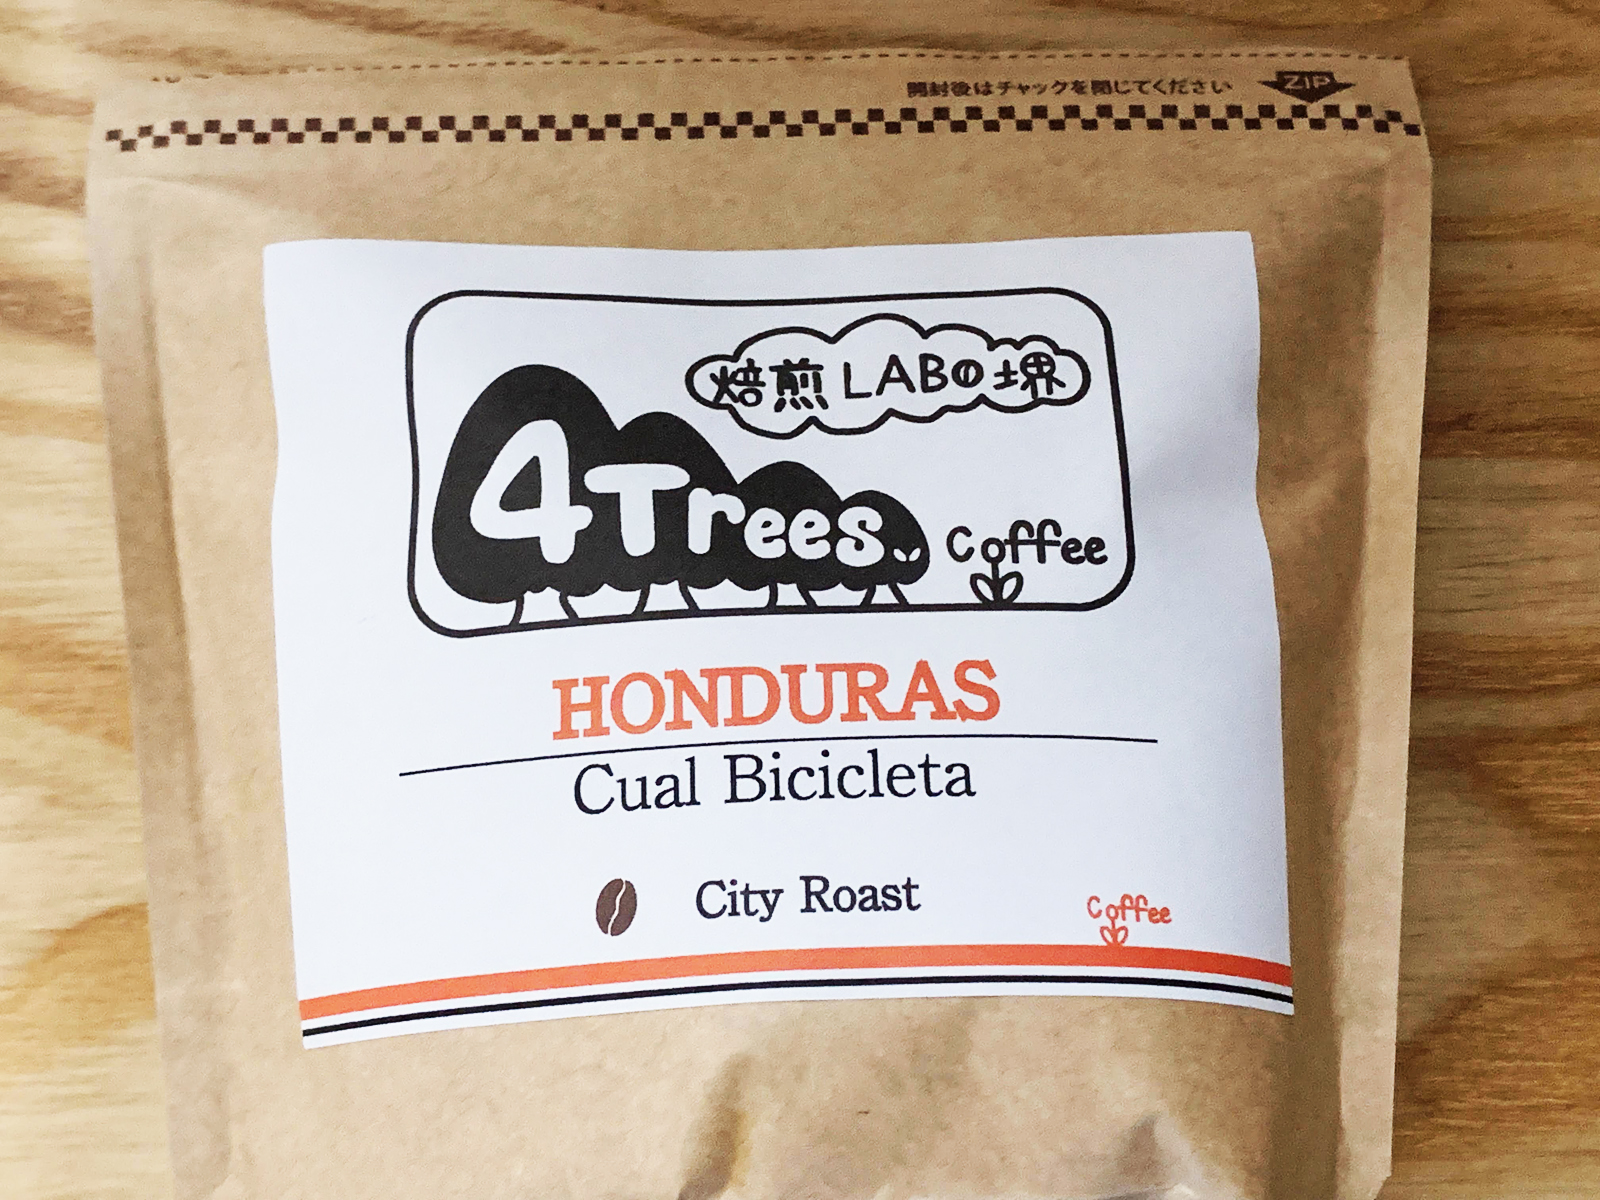 4Trees coffee 焙煎LABO堺_コーヒー豆のテイクアウト